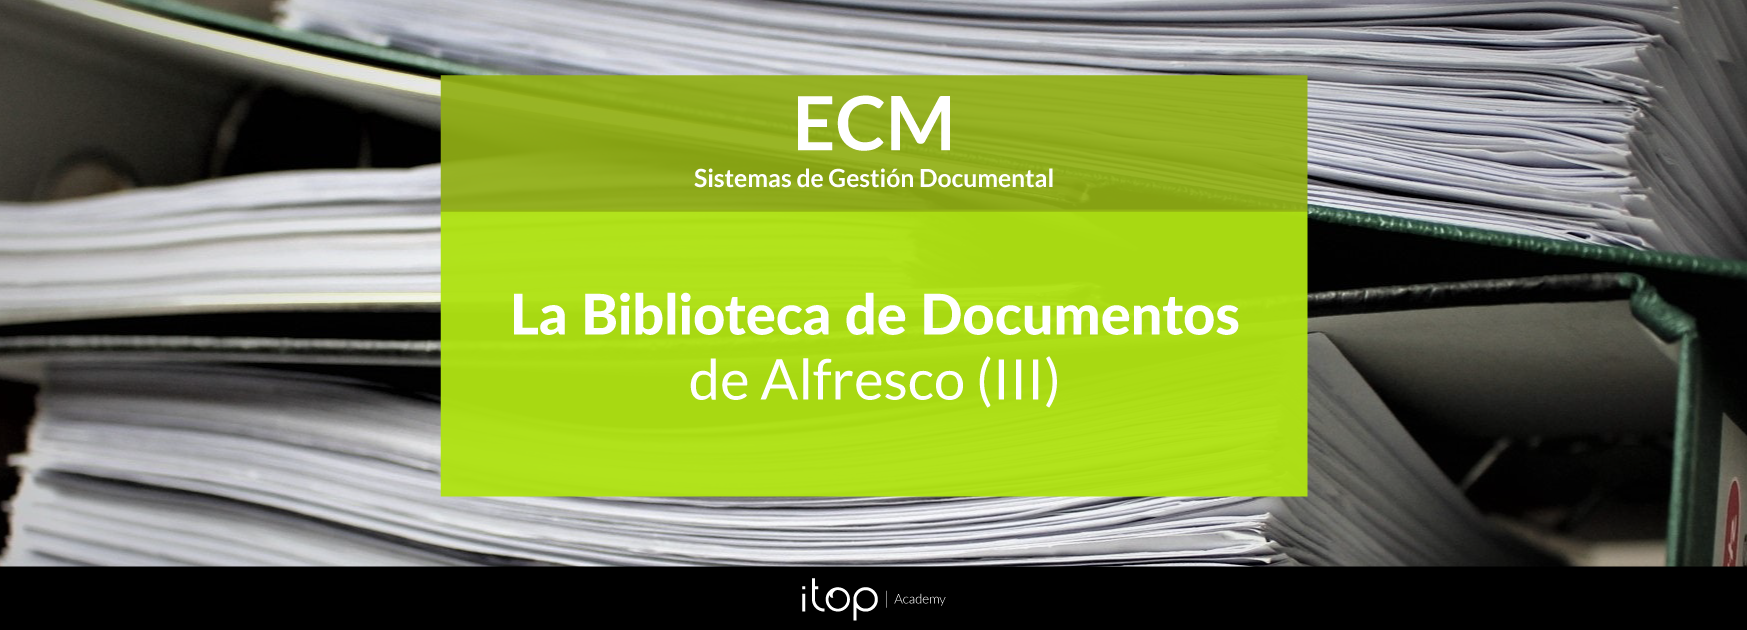 biblioteca-documentos-alfresco-parte-3